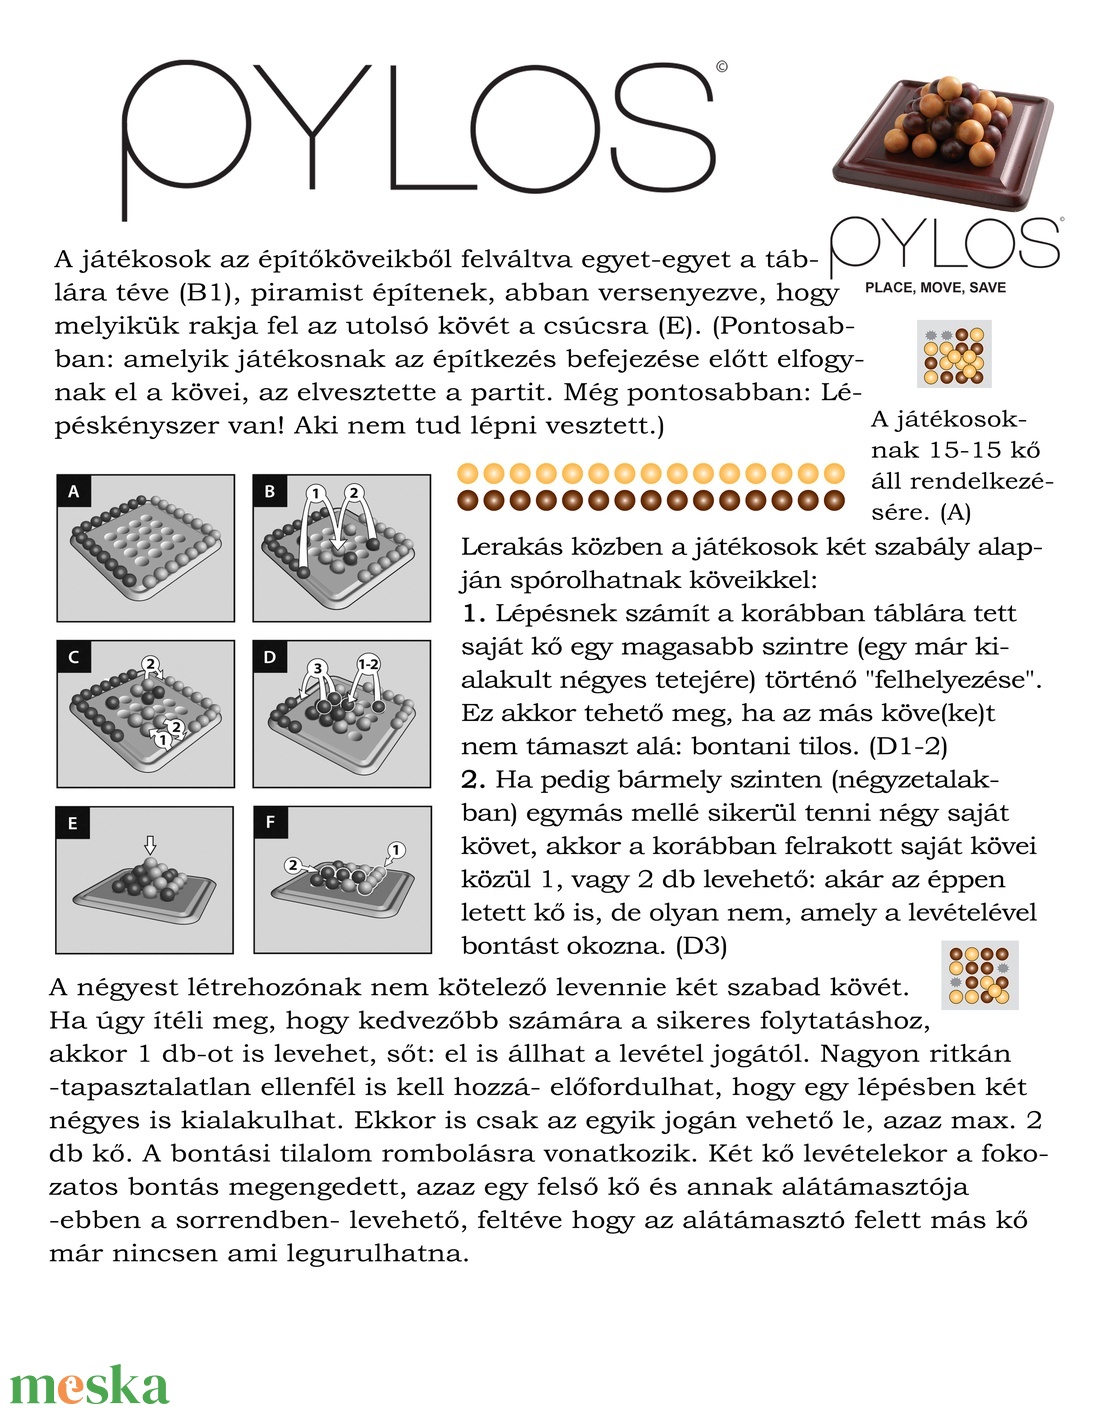 Pylos (három dimenziós amőba jellegű játék) - játék & sport - táblajáték és kártyajáték - társasjátékok - Meska.hu